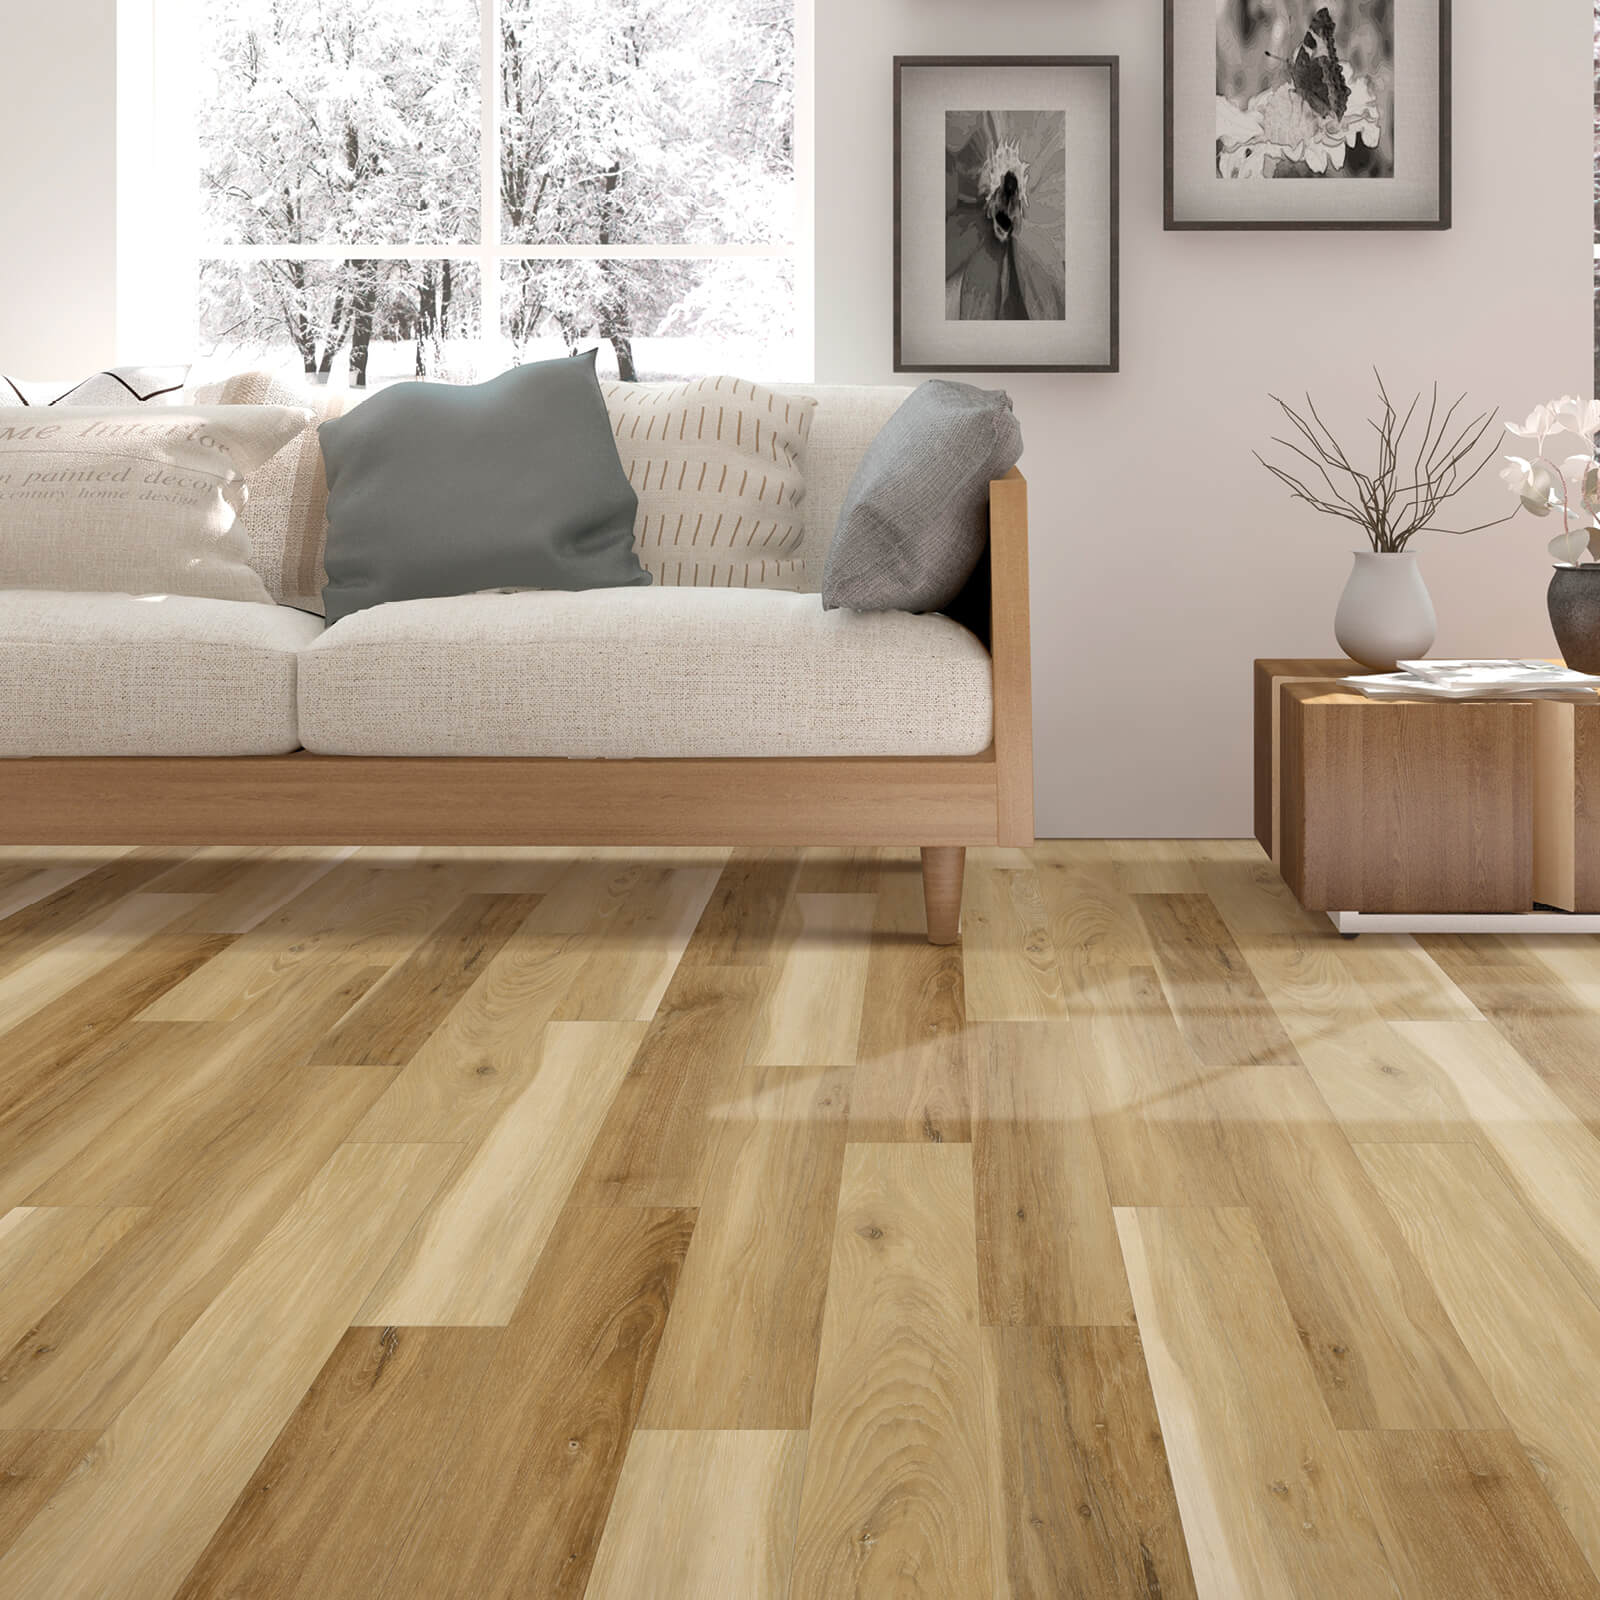 Wood look laminate | Northwest Flooring Gallery